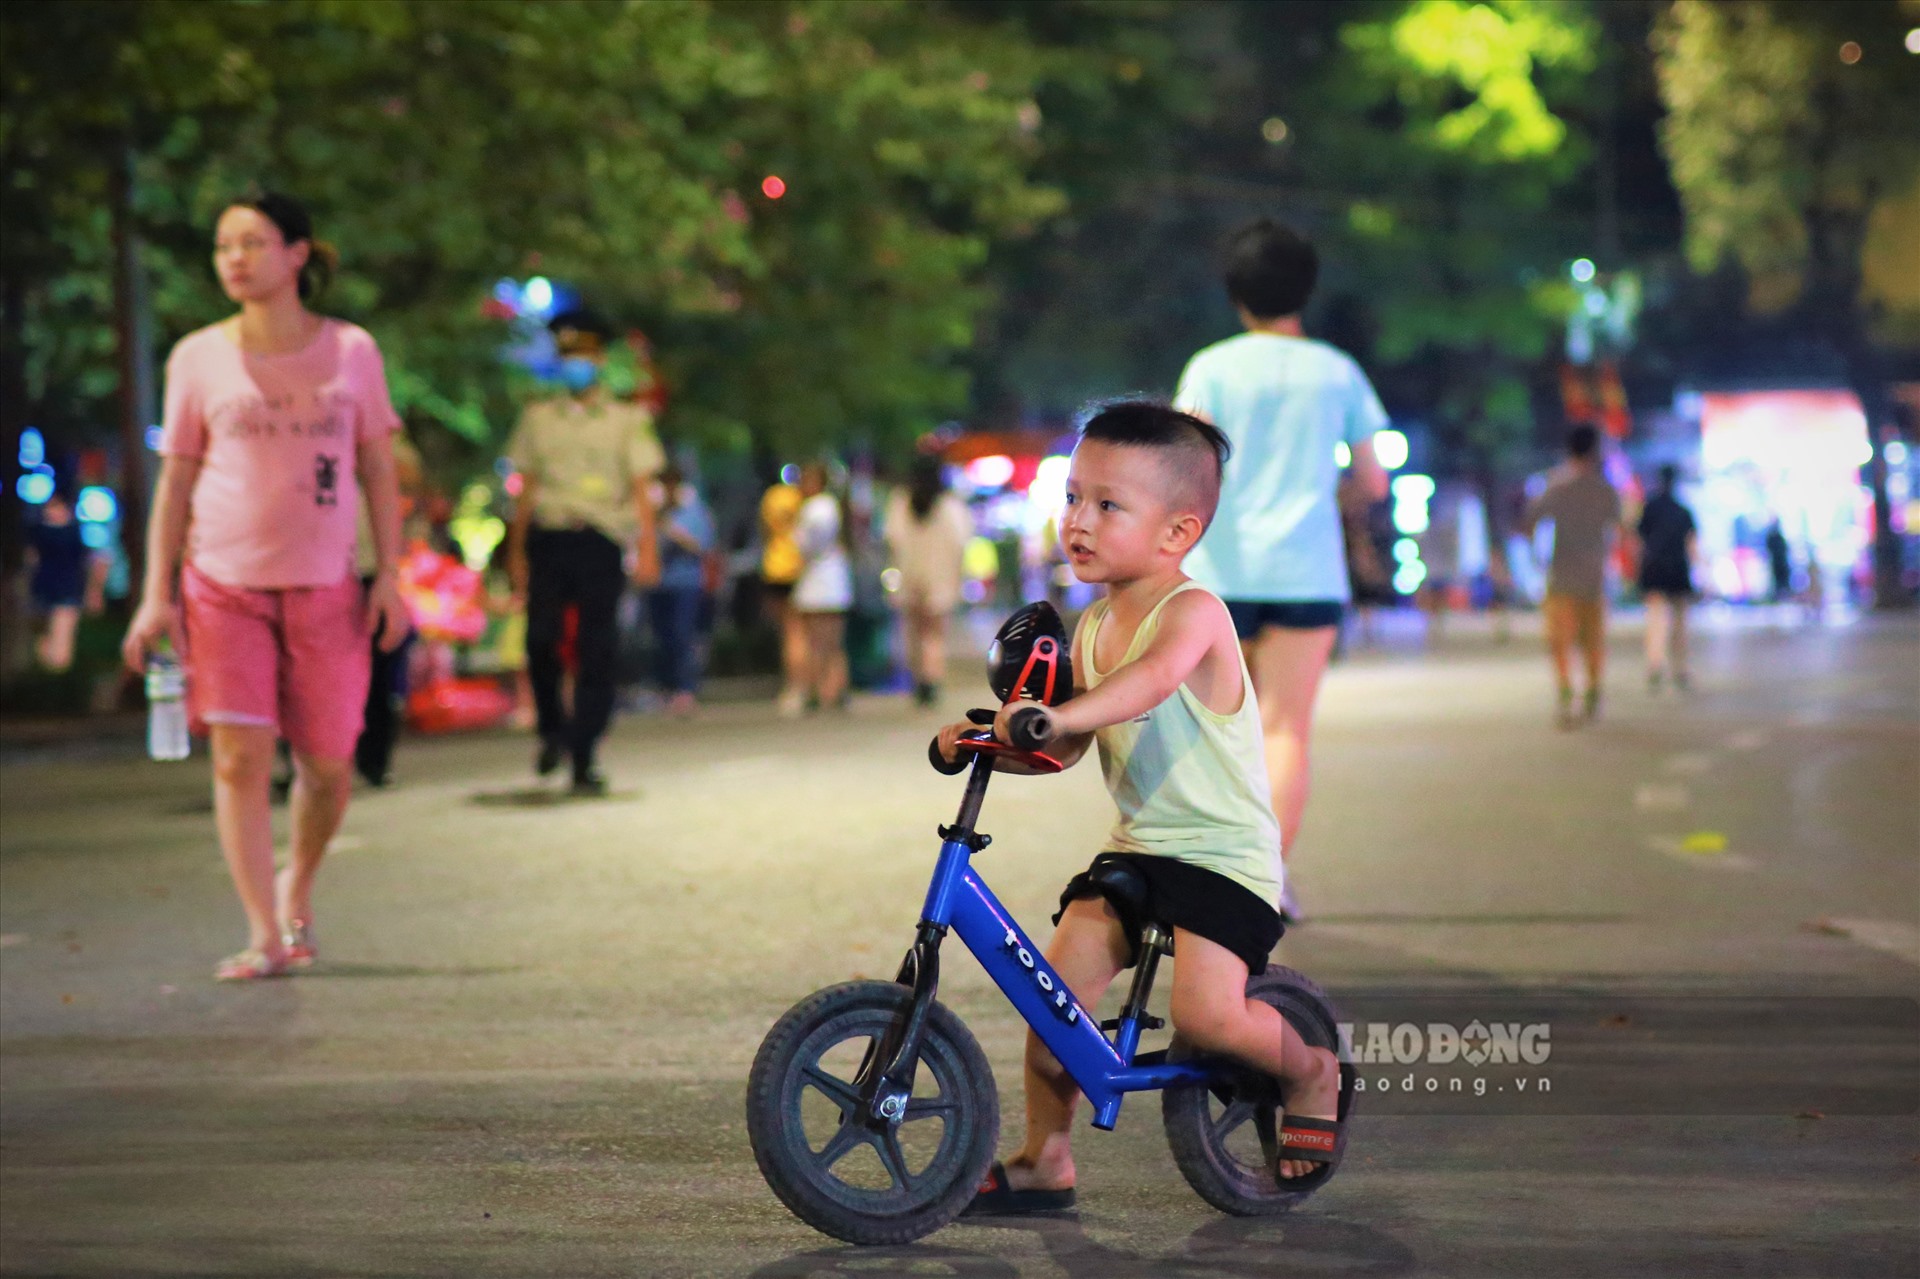 Sau chuỗi ngày dài cách ly xã hội, các bạn nhỏ thoải mái đạp xe, vui chơi trong khu vực phố đi bộ một cách an toàn.